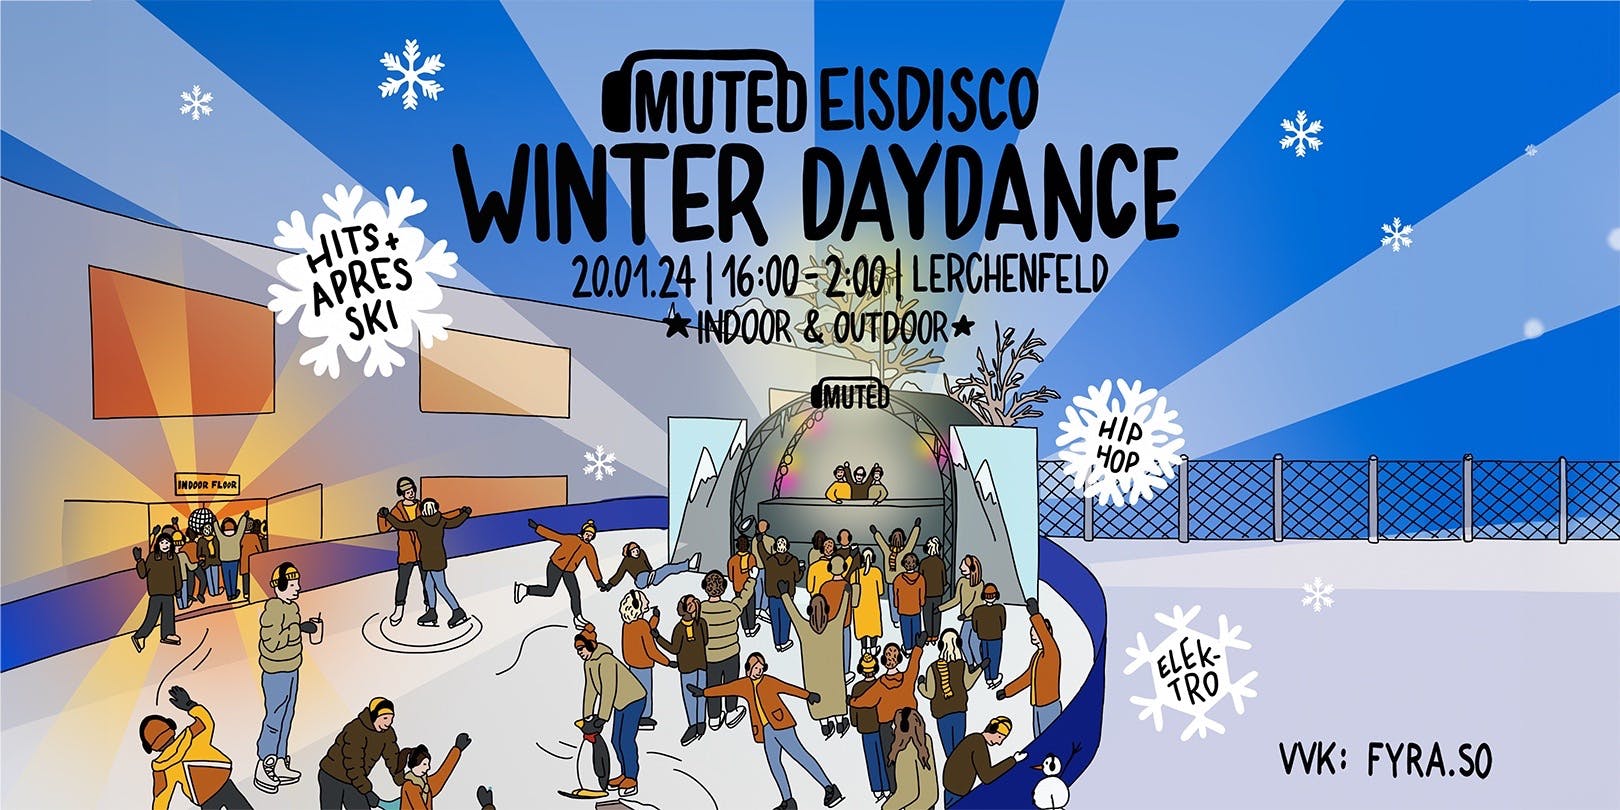 Titelbild MUTED EIS DISCO - Winter Day Dance 